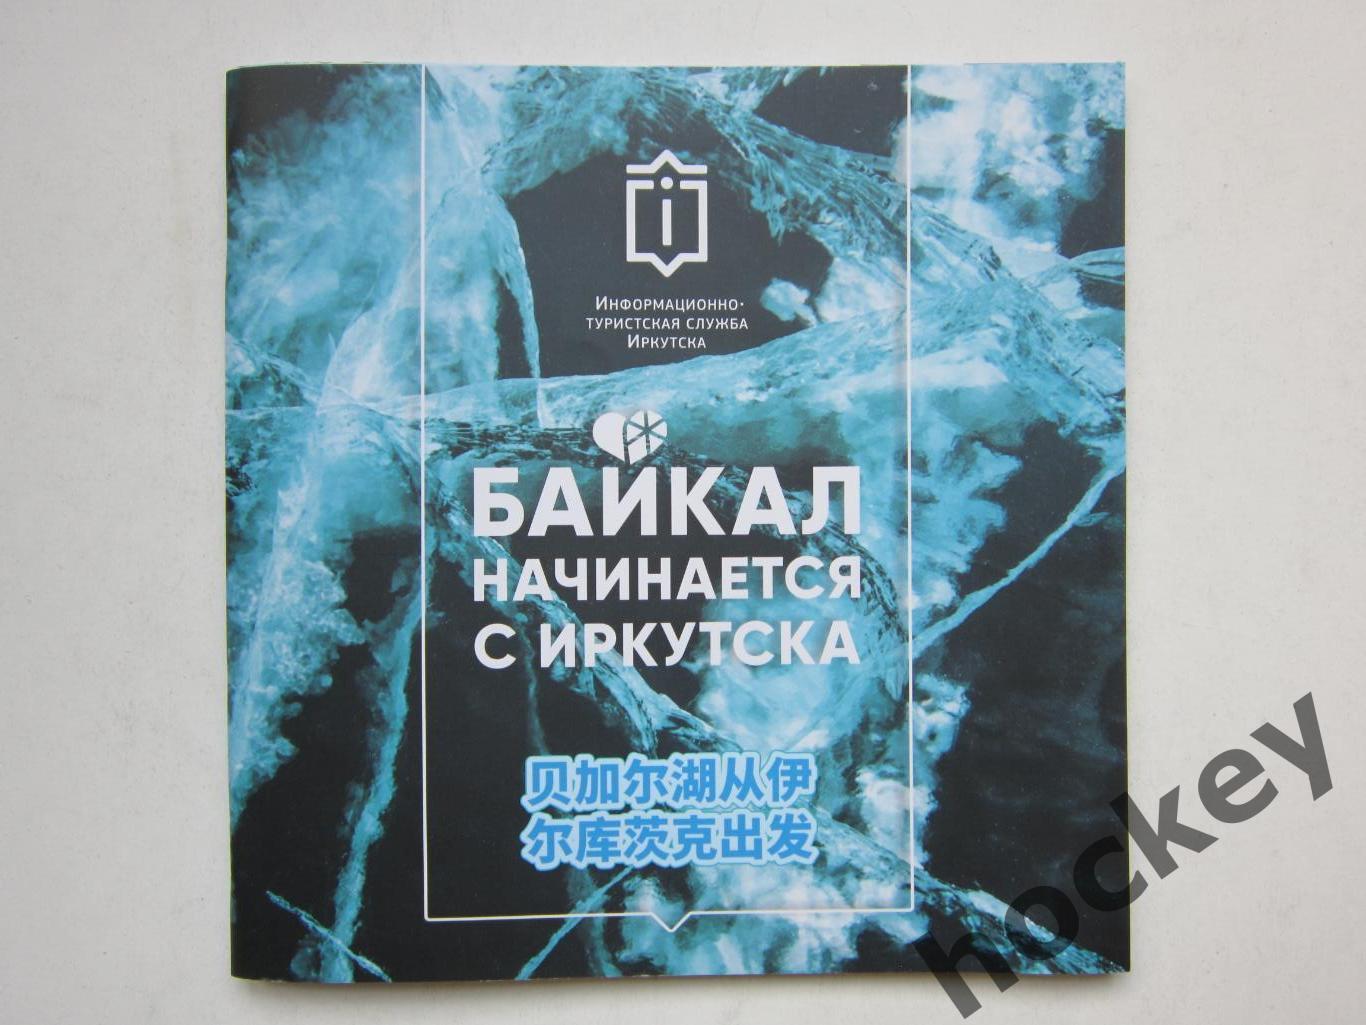 Иркутск. Байкал начинается с Иркутска. Буклет (40 стр.)